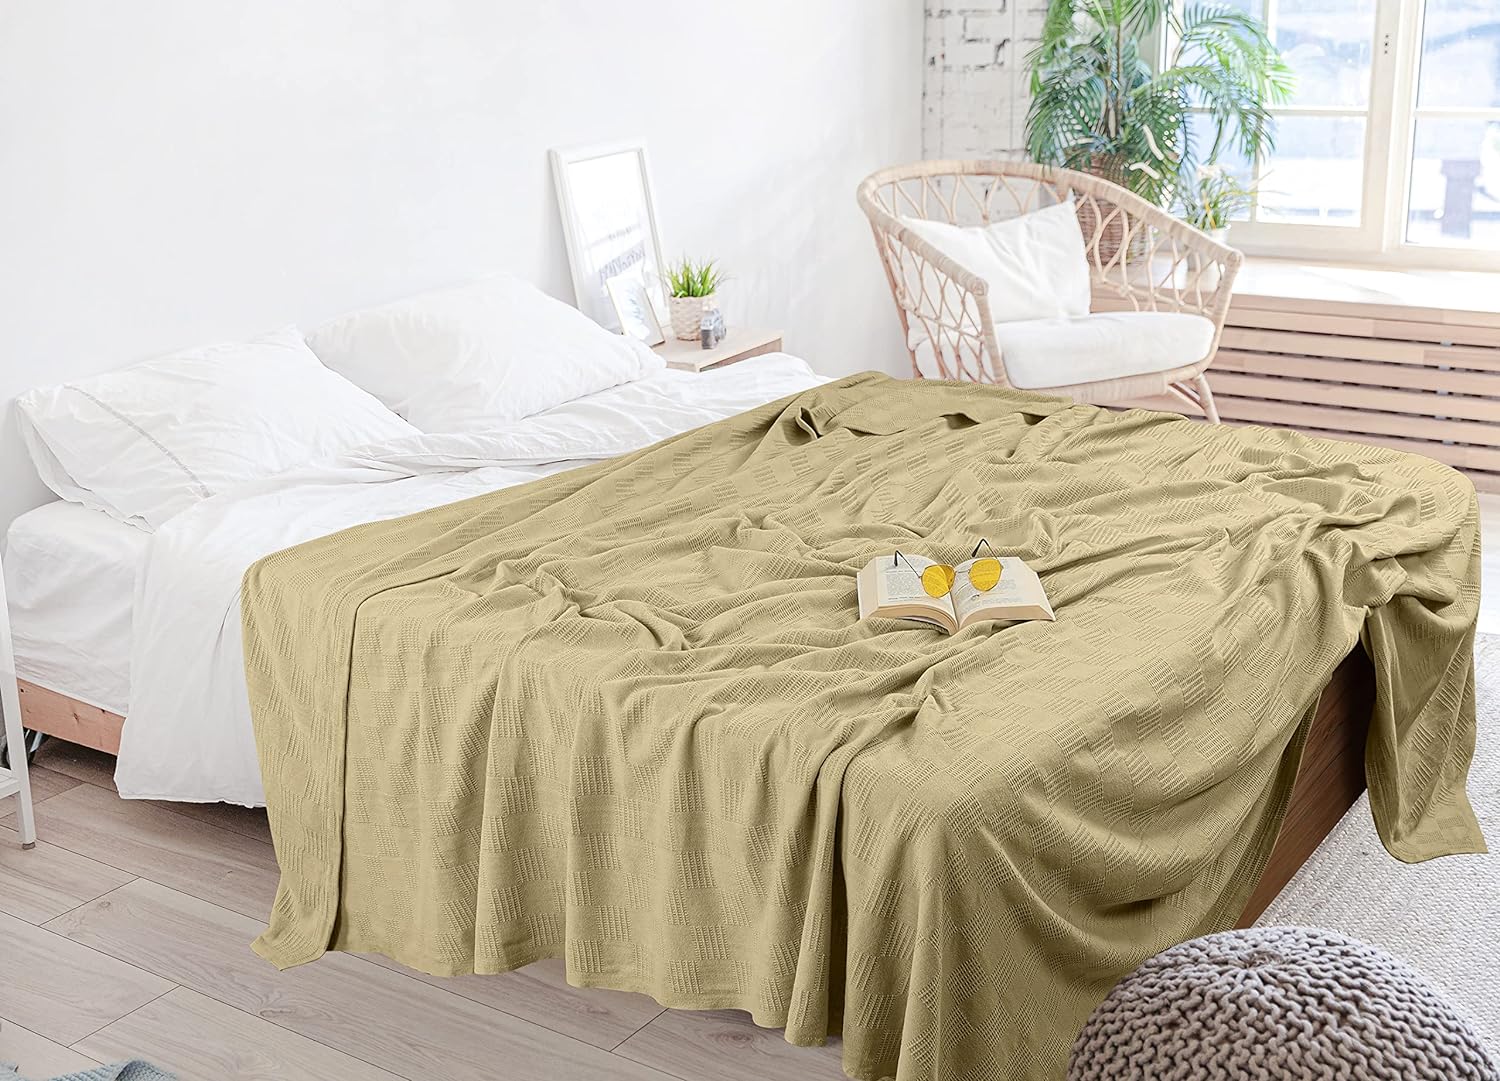 Utopia Bedding Fleece Blanket Queen Size Black 300gSM Luxury